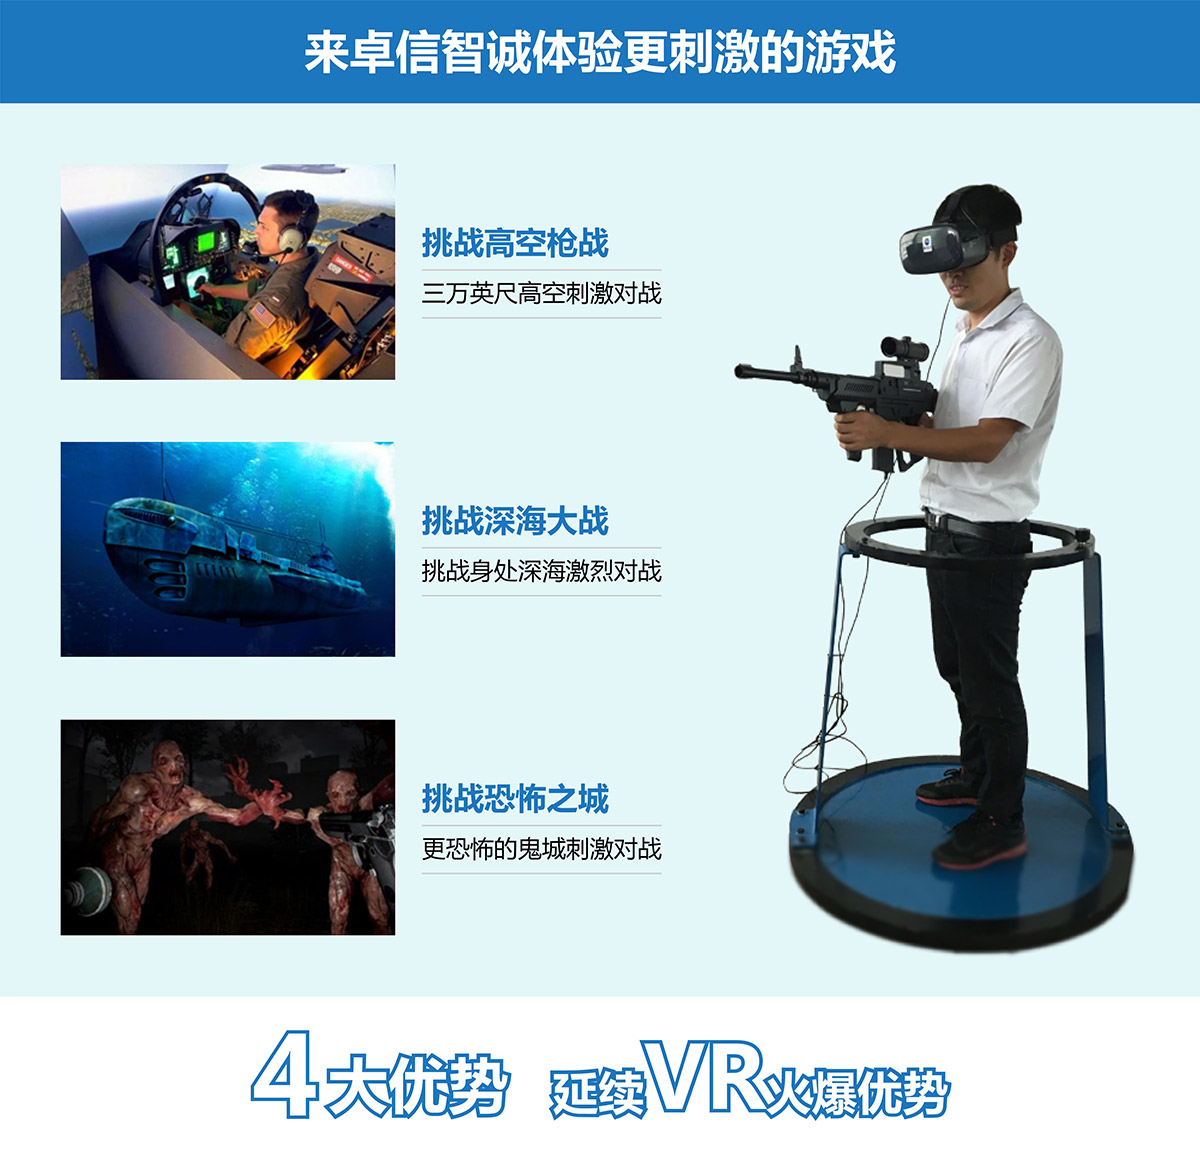 广东省广州奇影幻境VR对战4大优势延续vr火爆优势.jpg